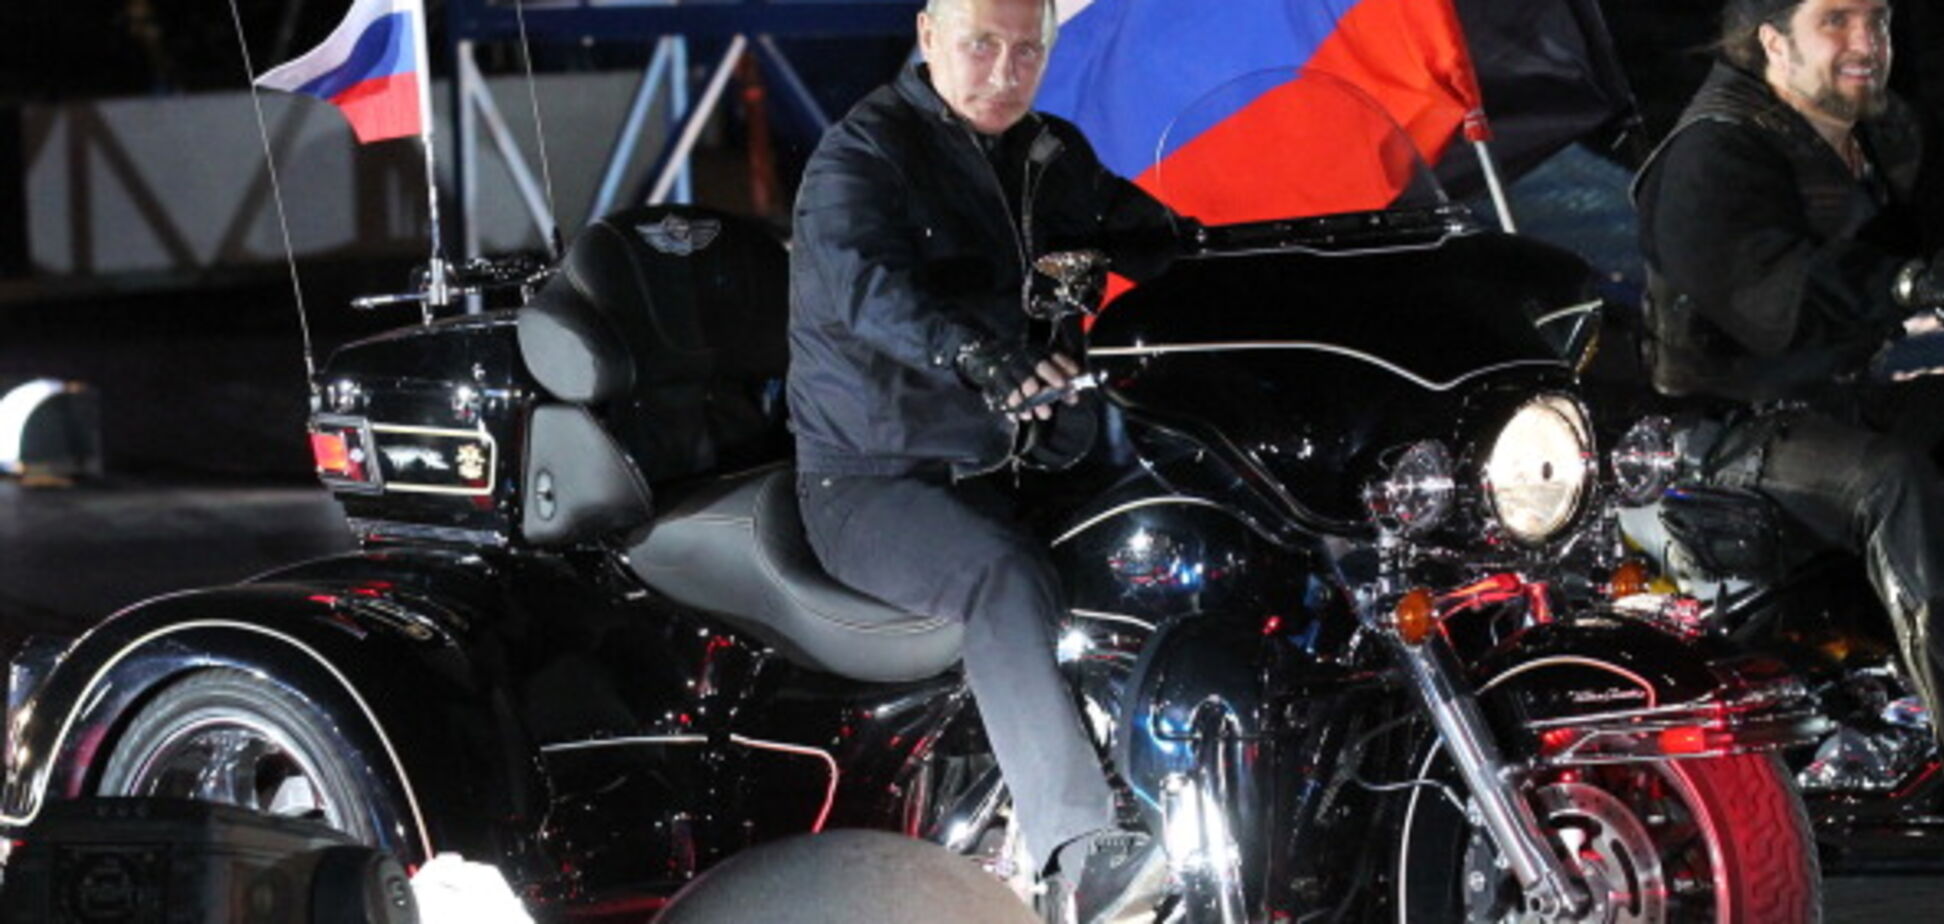 Найголовніше - надійність: Путіна підняли на сміх через 'передвиборче' відео